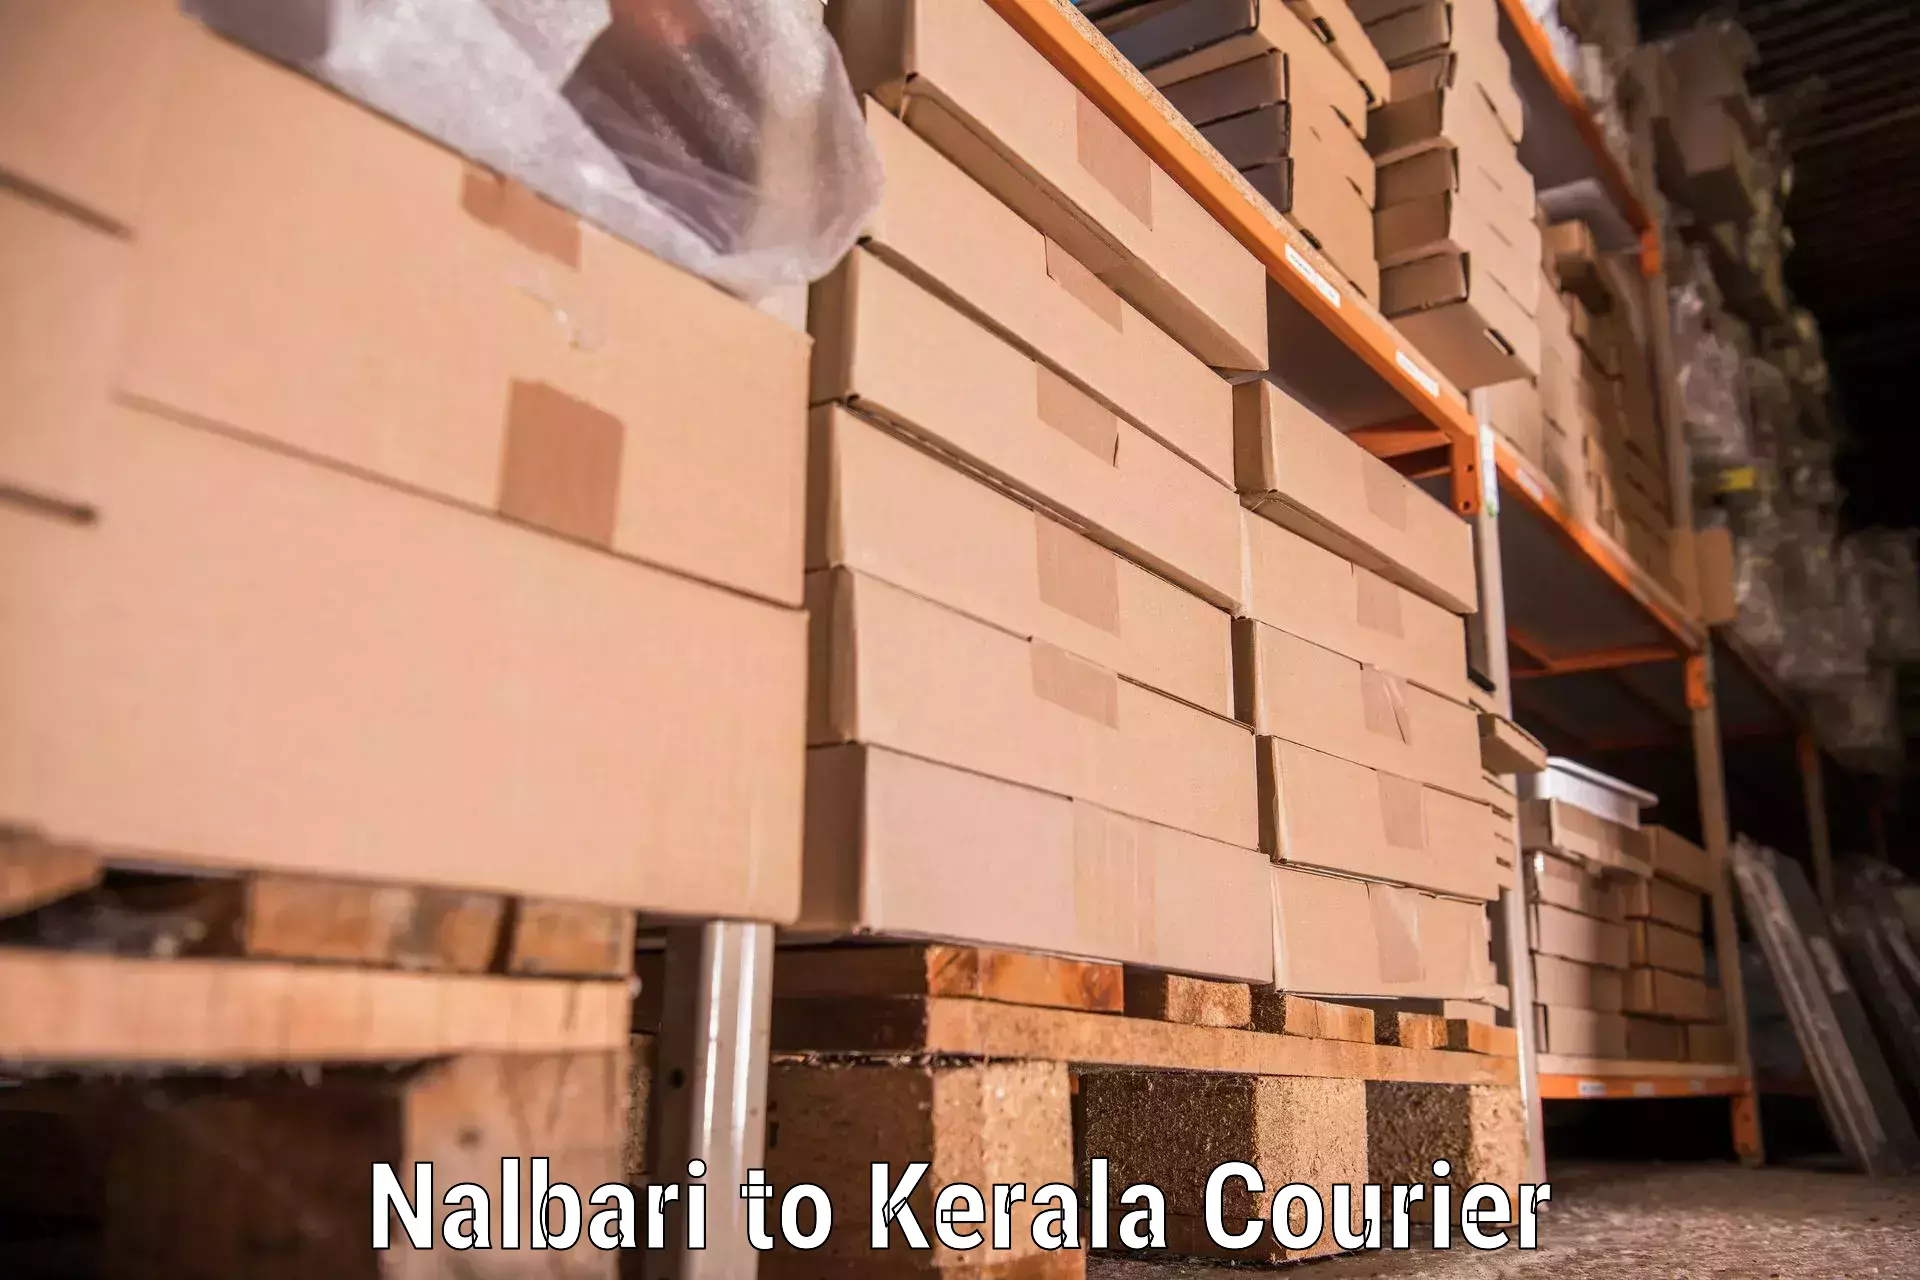 Furniture moving solutions Nalbari to Guruvayur